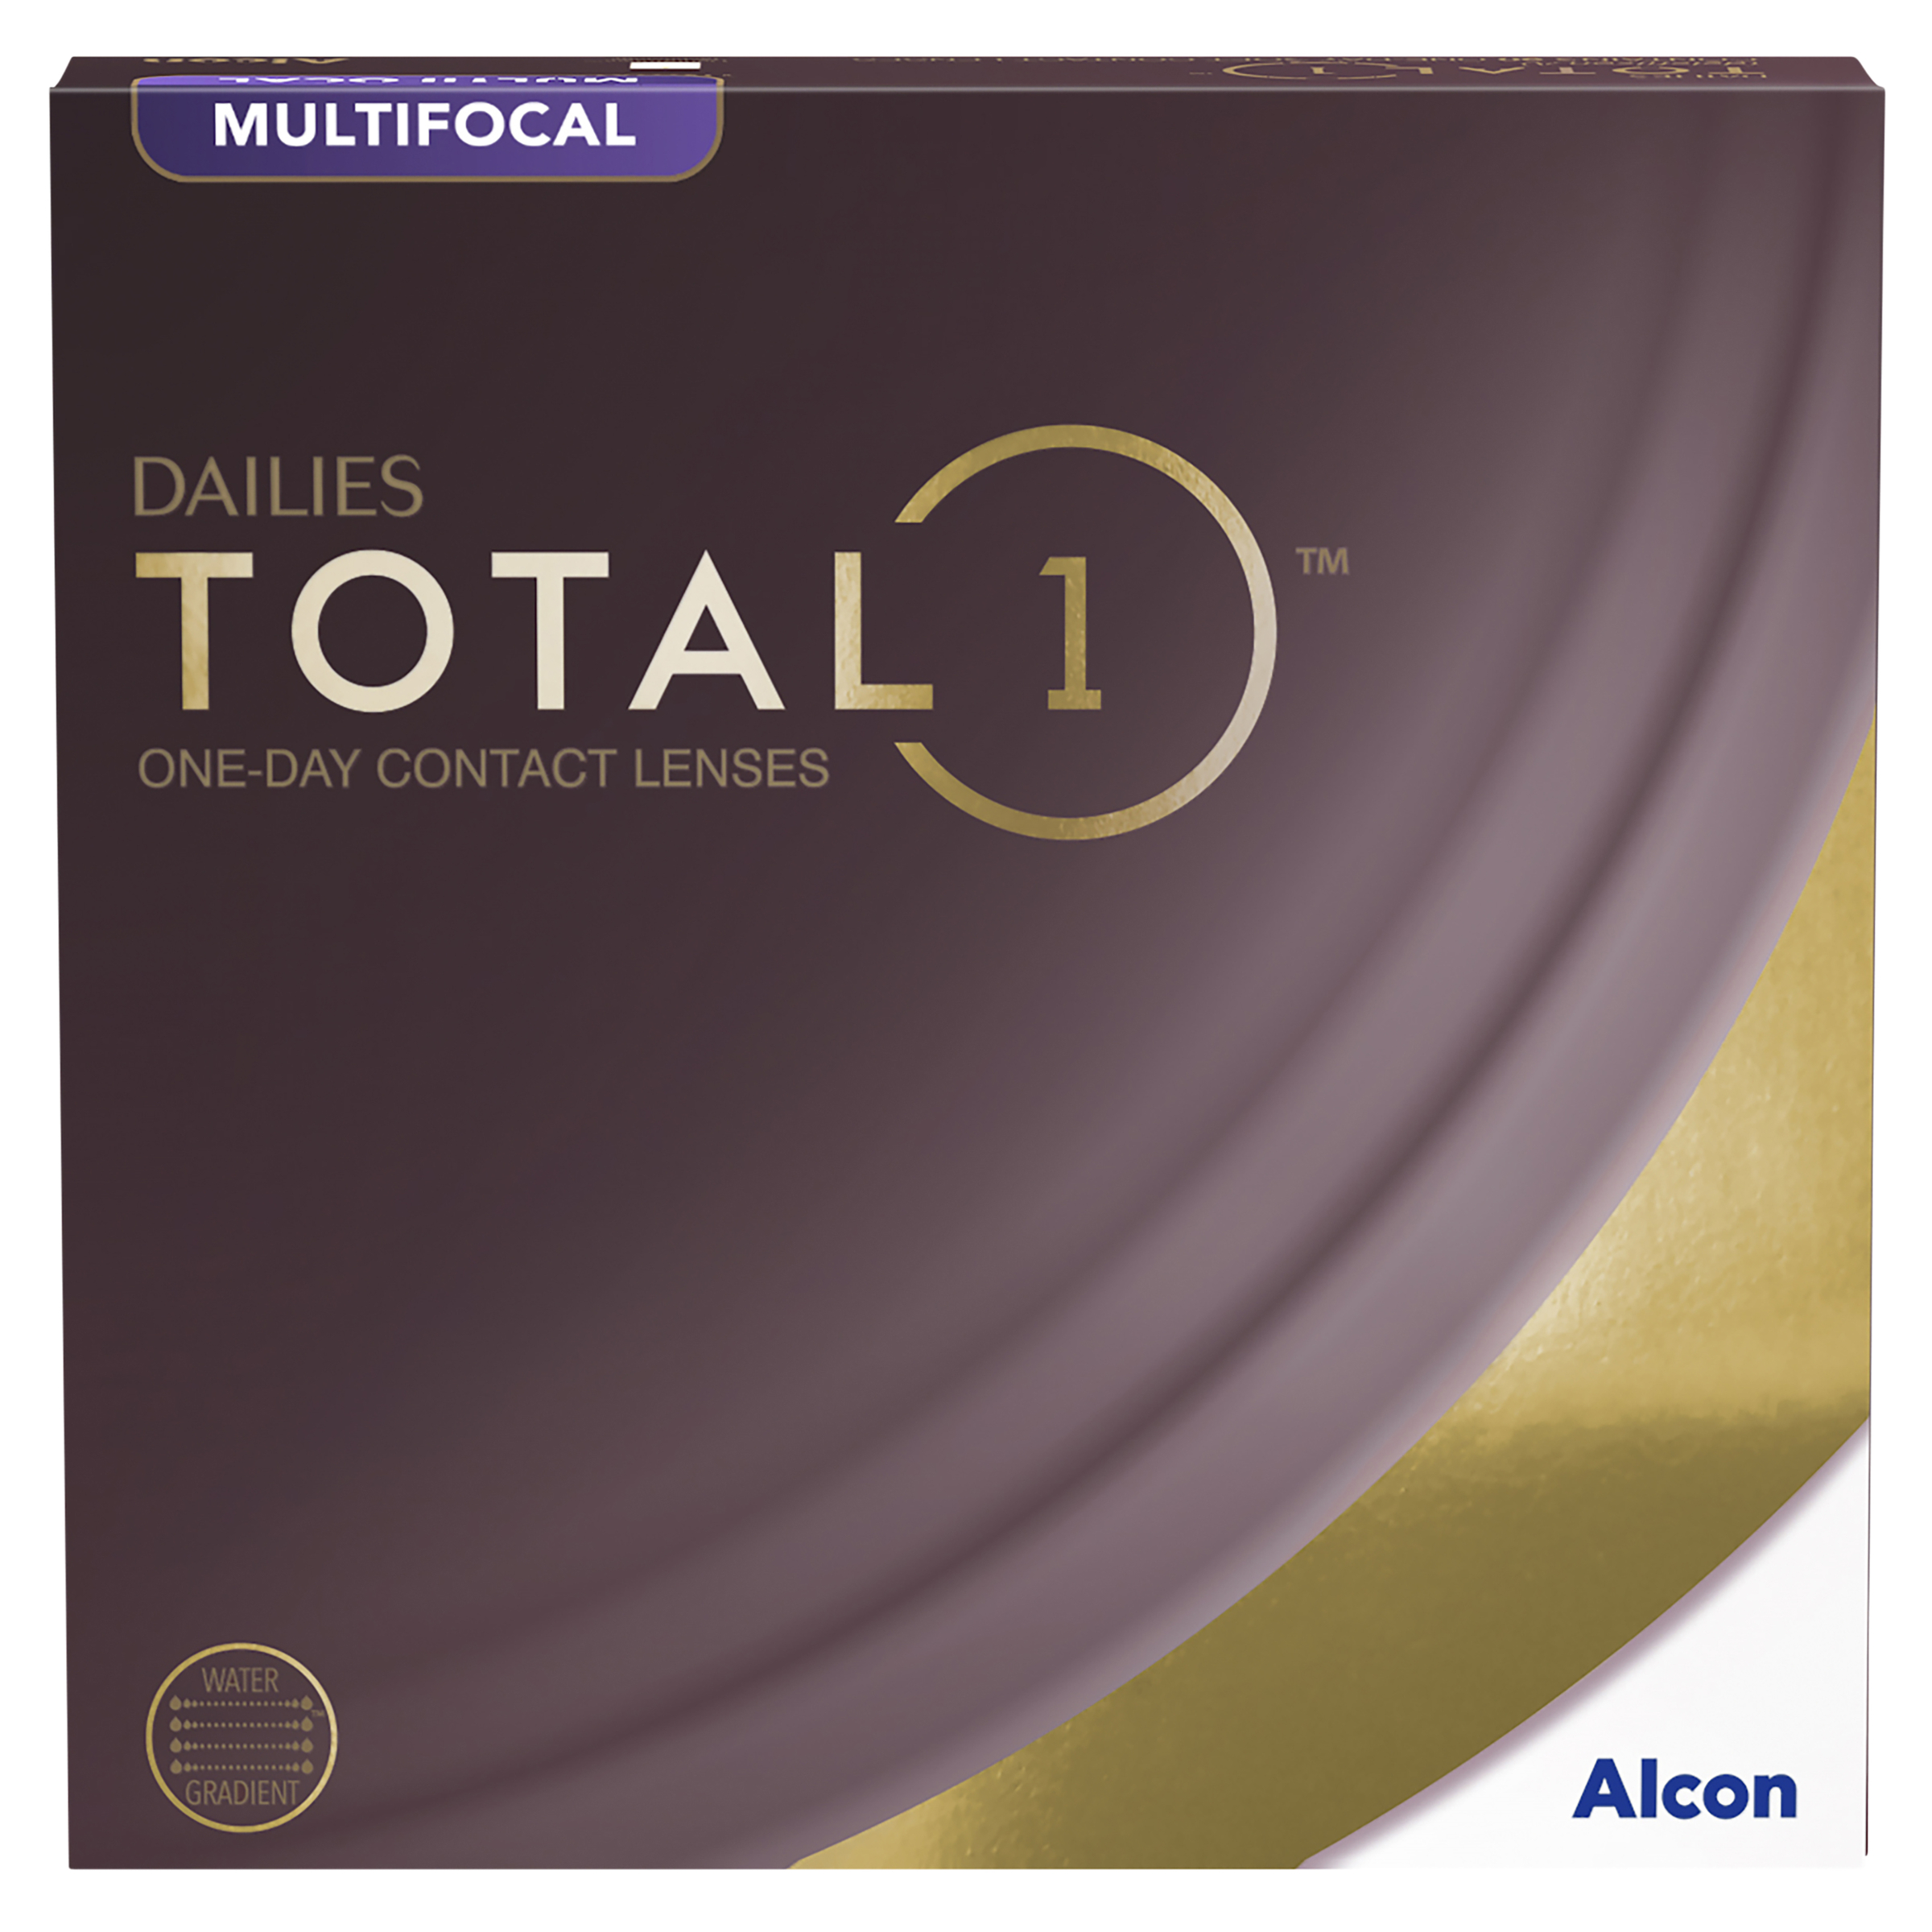 Dailies Total 1 Multifocal - 90 Pack